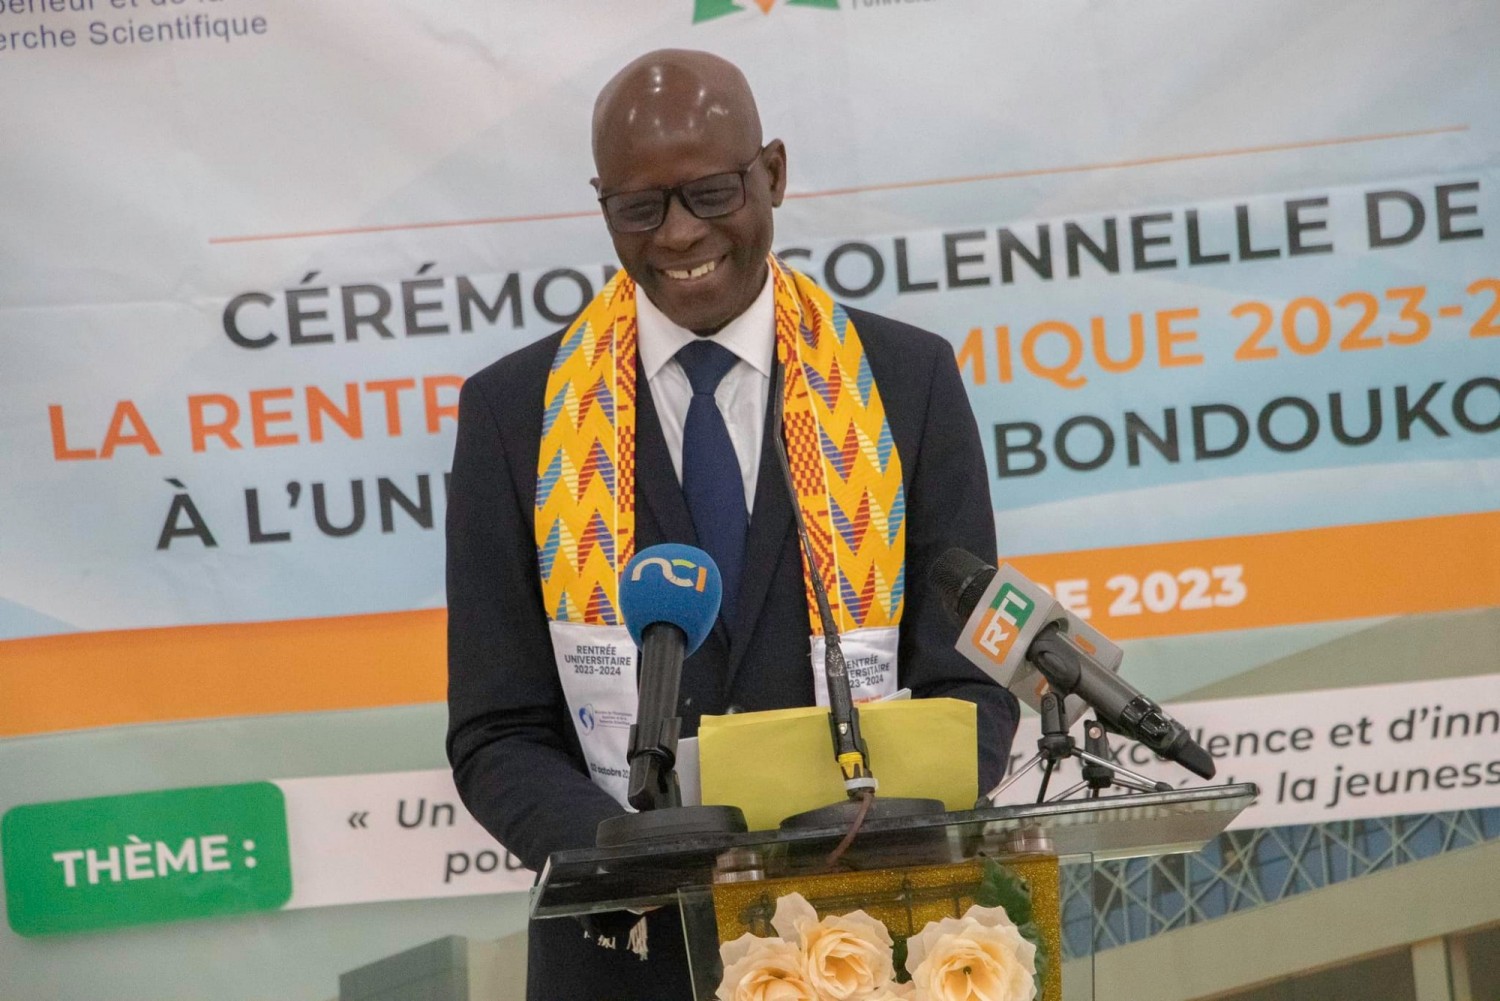 Côte d'Ivoire : Rentrée universitaire  unique 2023-2024, les recommandations du SESSUP au Ministère